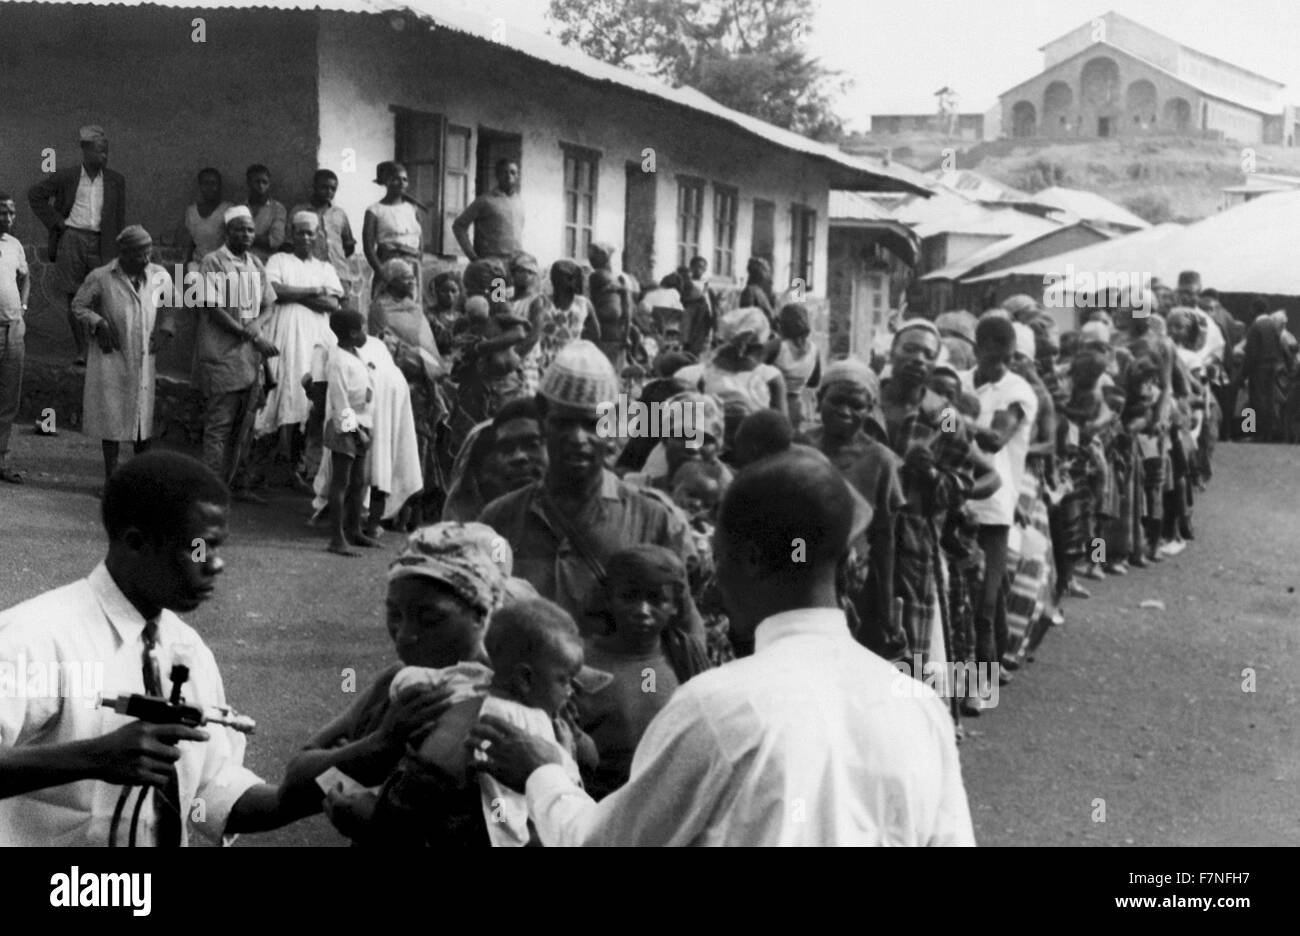 Catturati nella zona tribale del Camerun occidentale conosciuta come Banso, questa fotografia storica rappresentata la linea dei paesani che attende il vaiolo e la vaccinazione contro il morbillo durante il paese della partecipazione in tutto il mondo gli sforzi per erradicate, e il controllo di tali malattie nel corso degli anni sessanta. Foto Stock